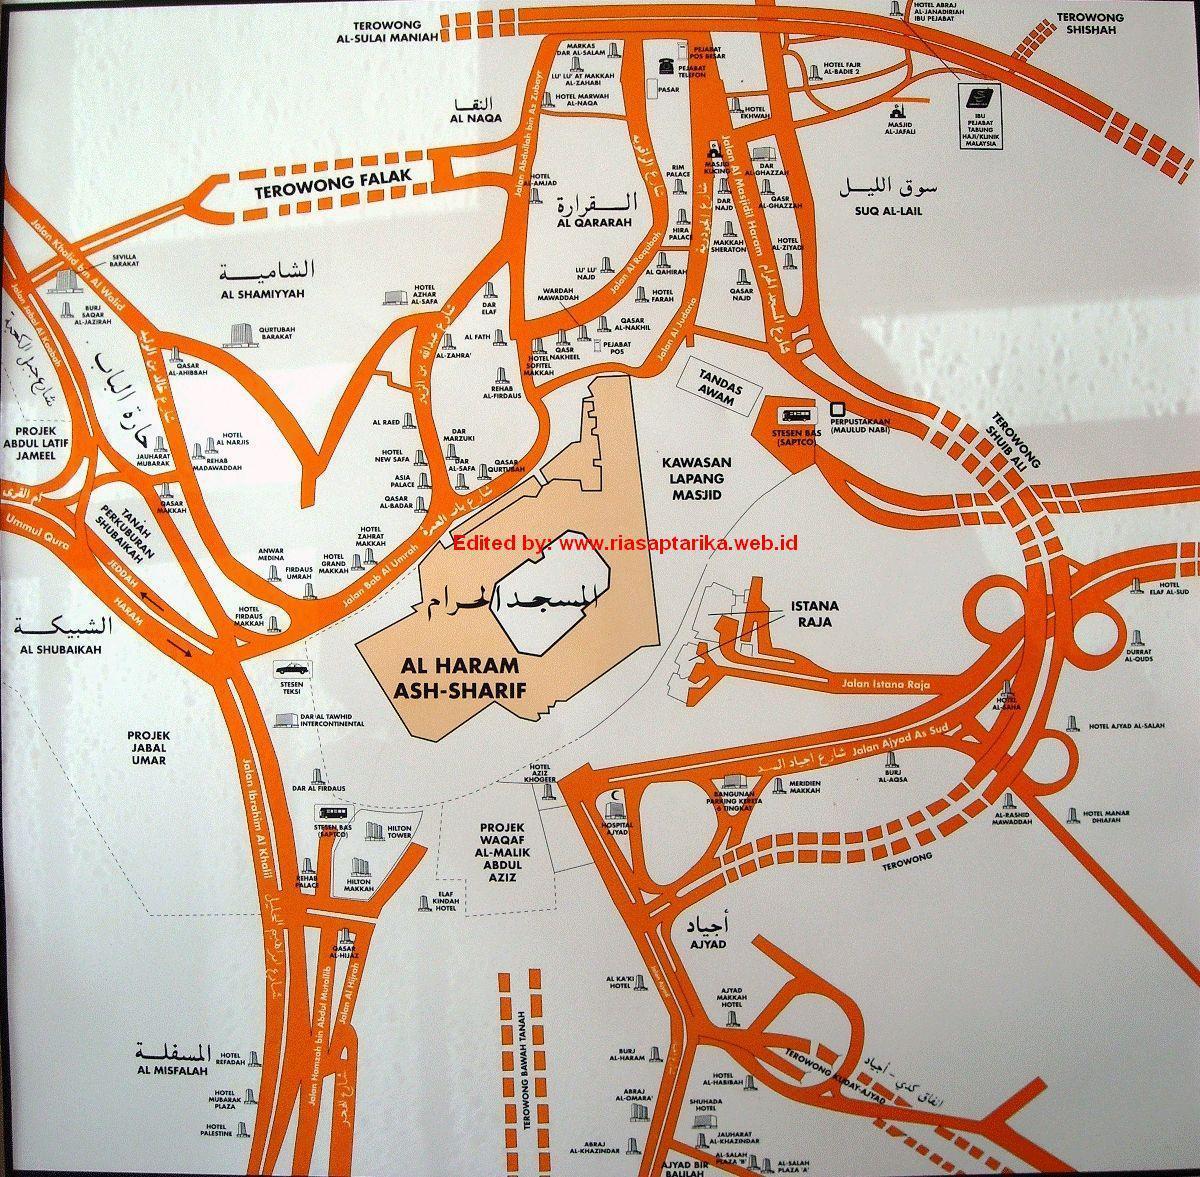 žemėlapis misfalah Makkah žemėlapyje